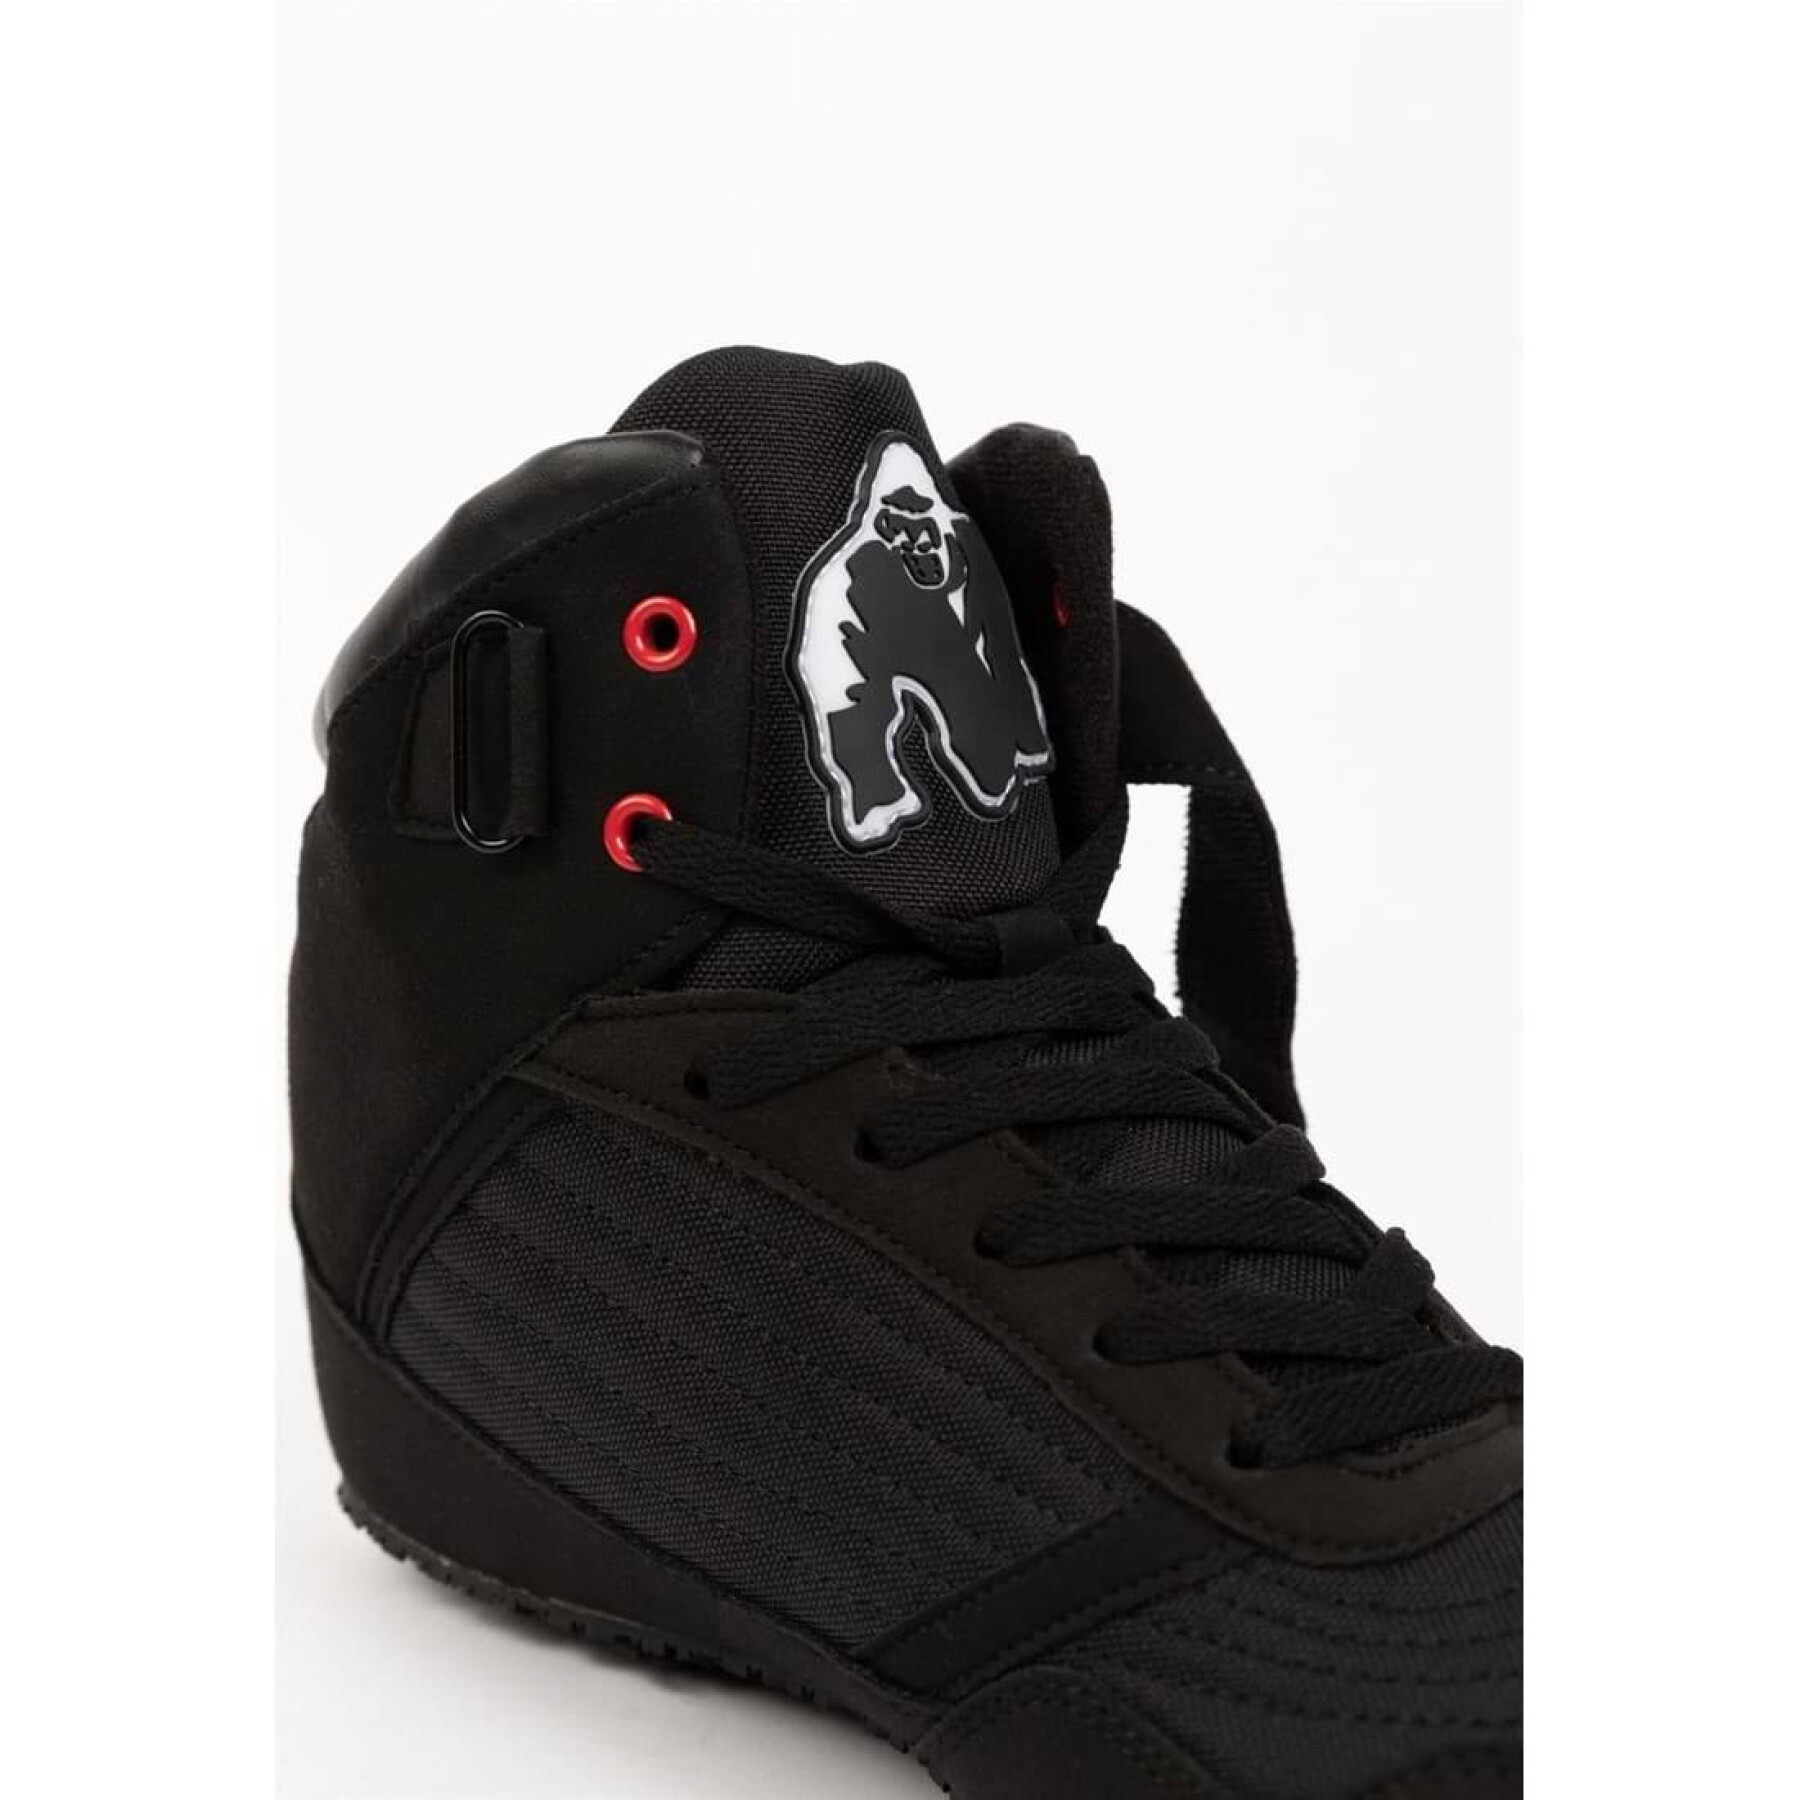 Cross training shoes Gorilla Wear